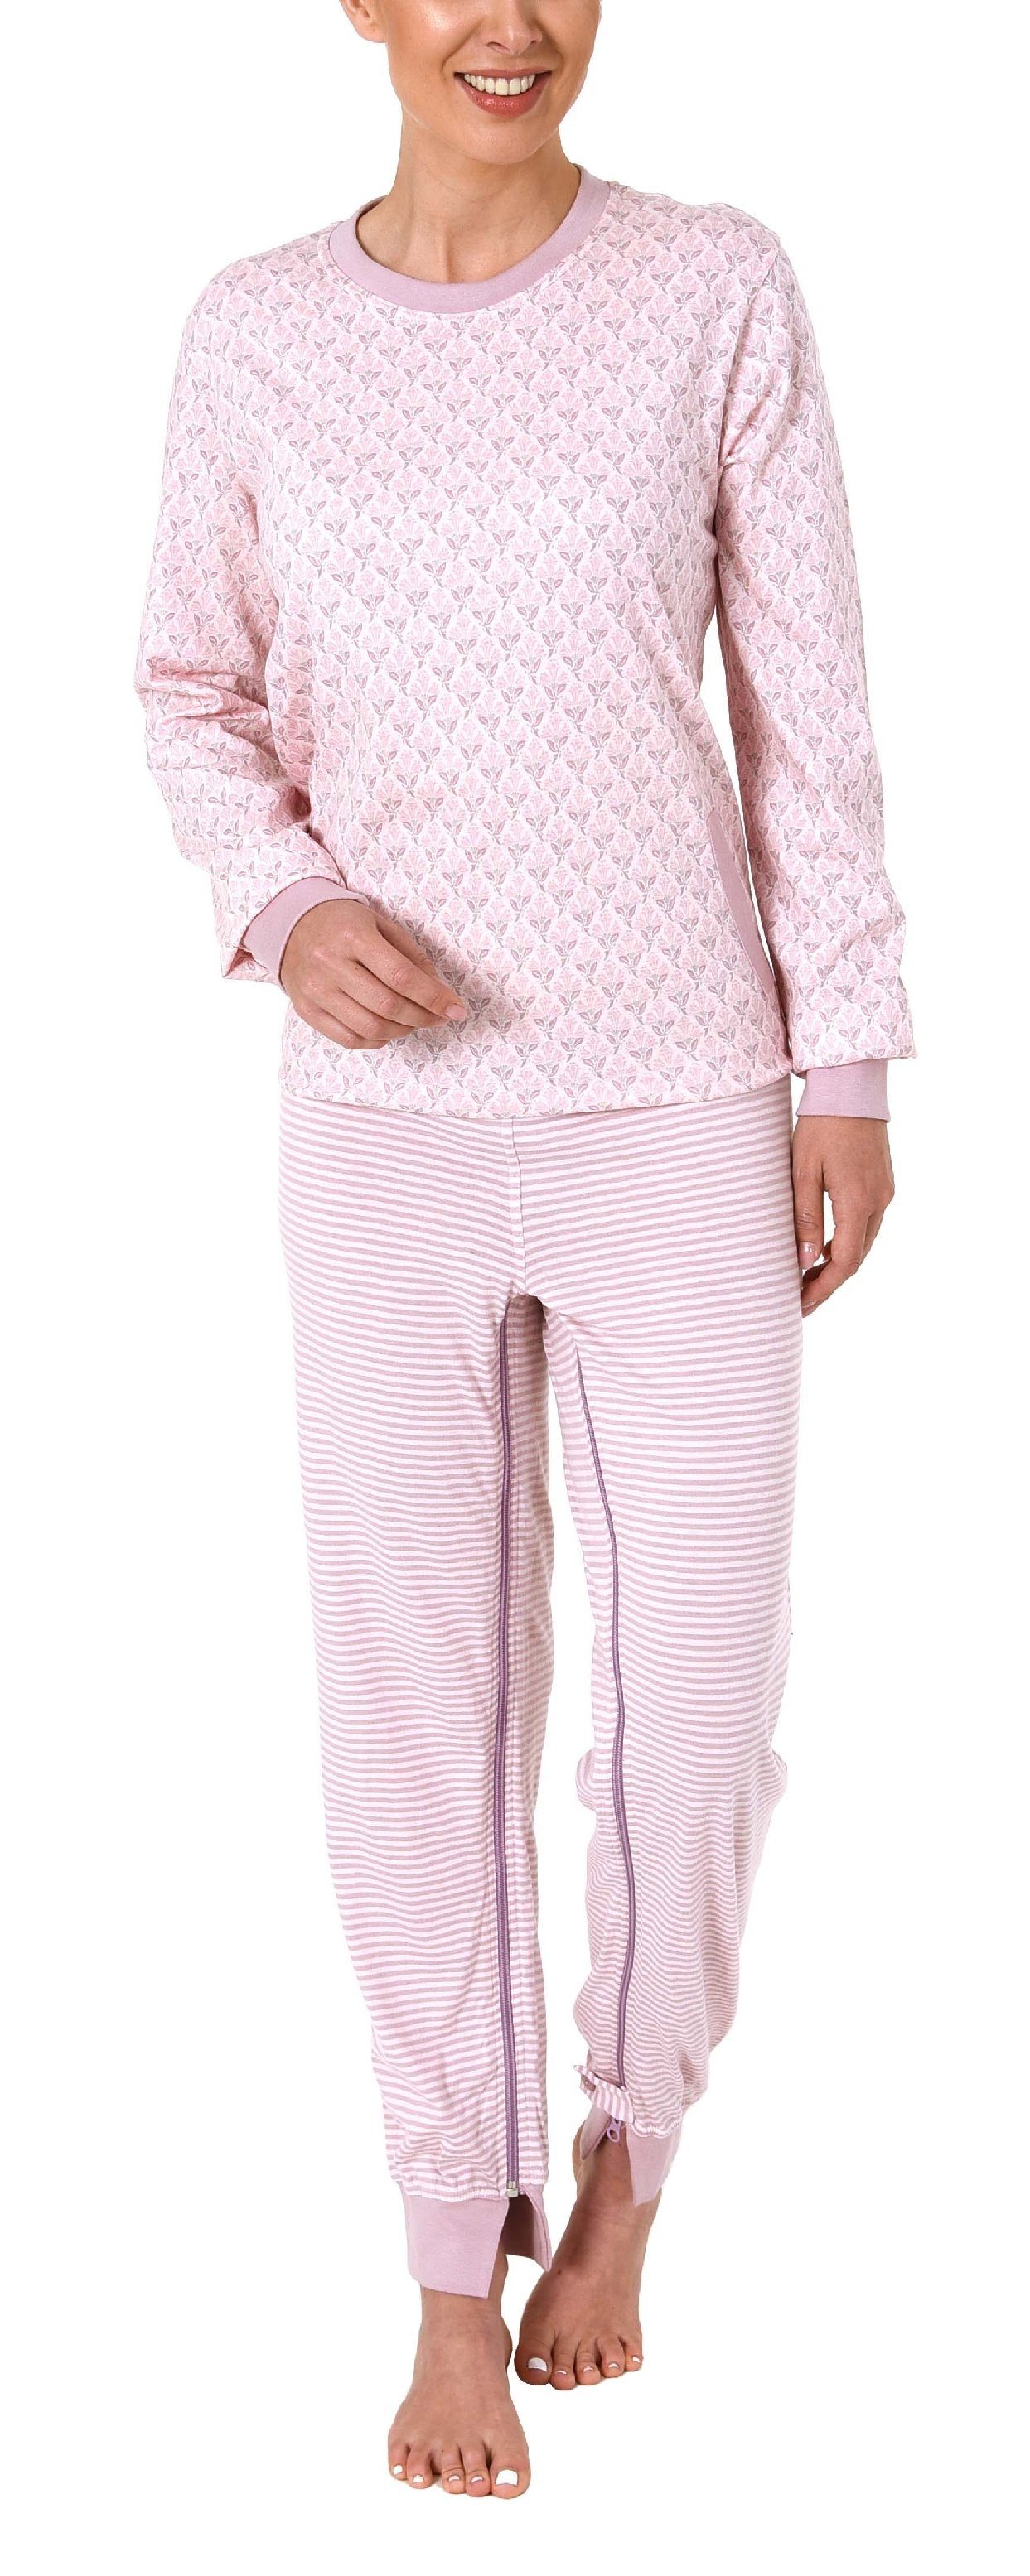 Normann Care Pyjama Damen Pflegeoverall langarm mit Reißverschluss am Rücken und am Bein